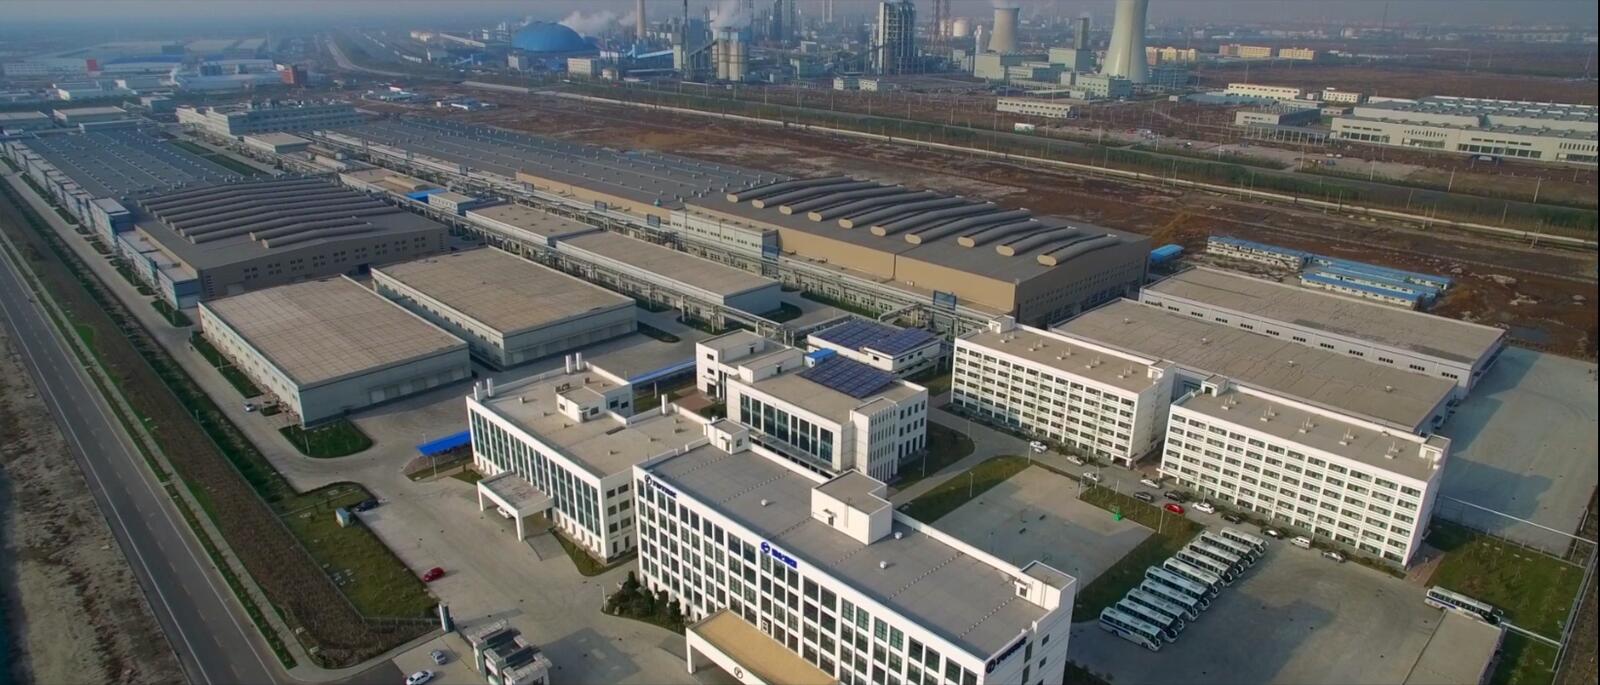 Der TUTRIC-Standort in Tianjin soll zur zweitgrößten OTR-Reifenfabrik Asiens werden. 